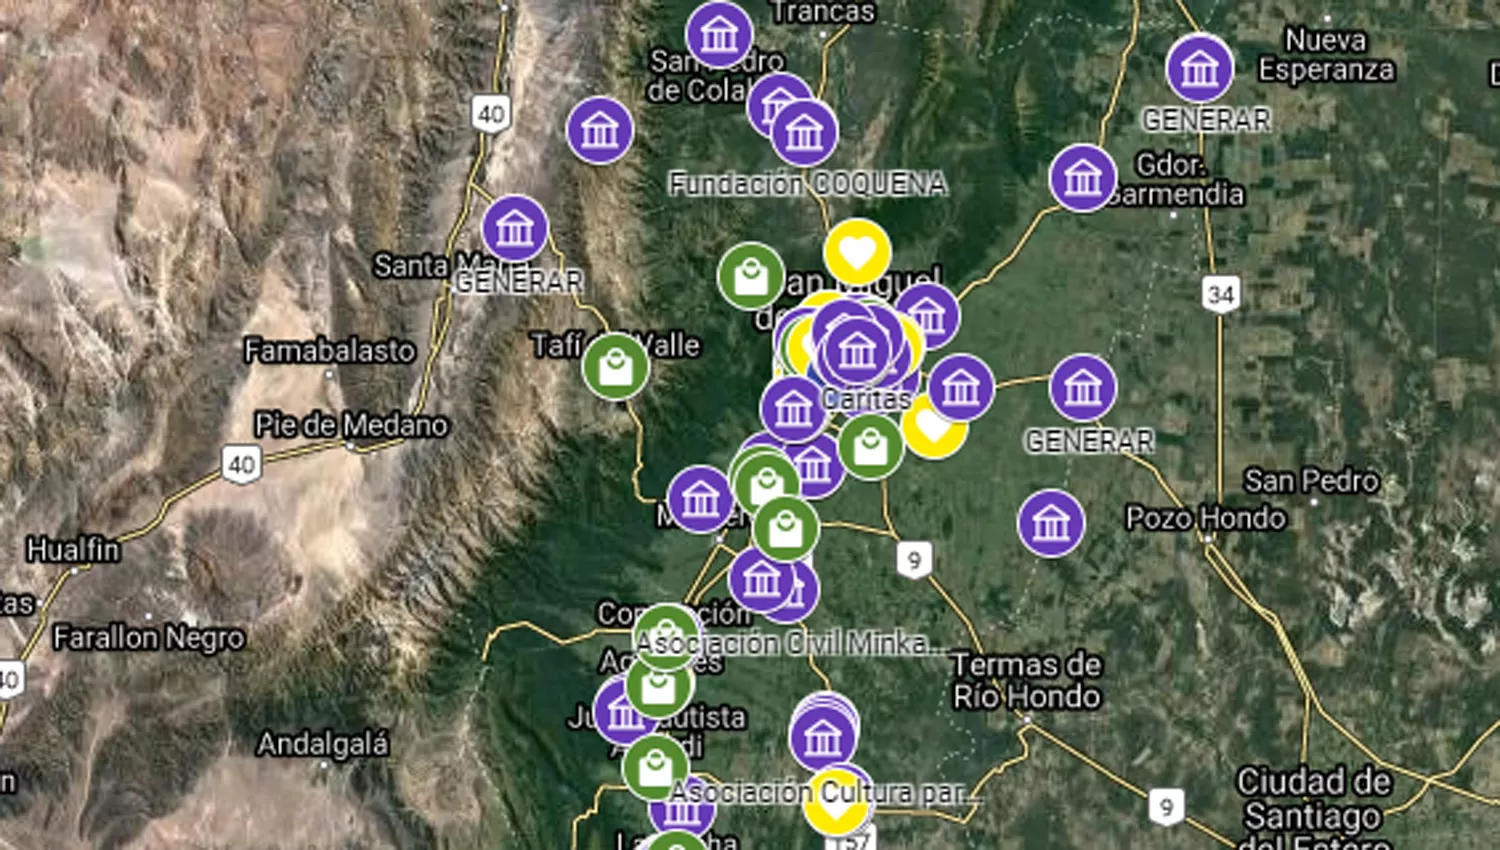 La cooperativa Generar realizó un mapa interactivo con la actividad de las ONGs